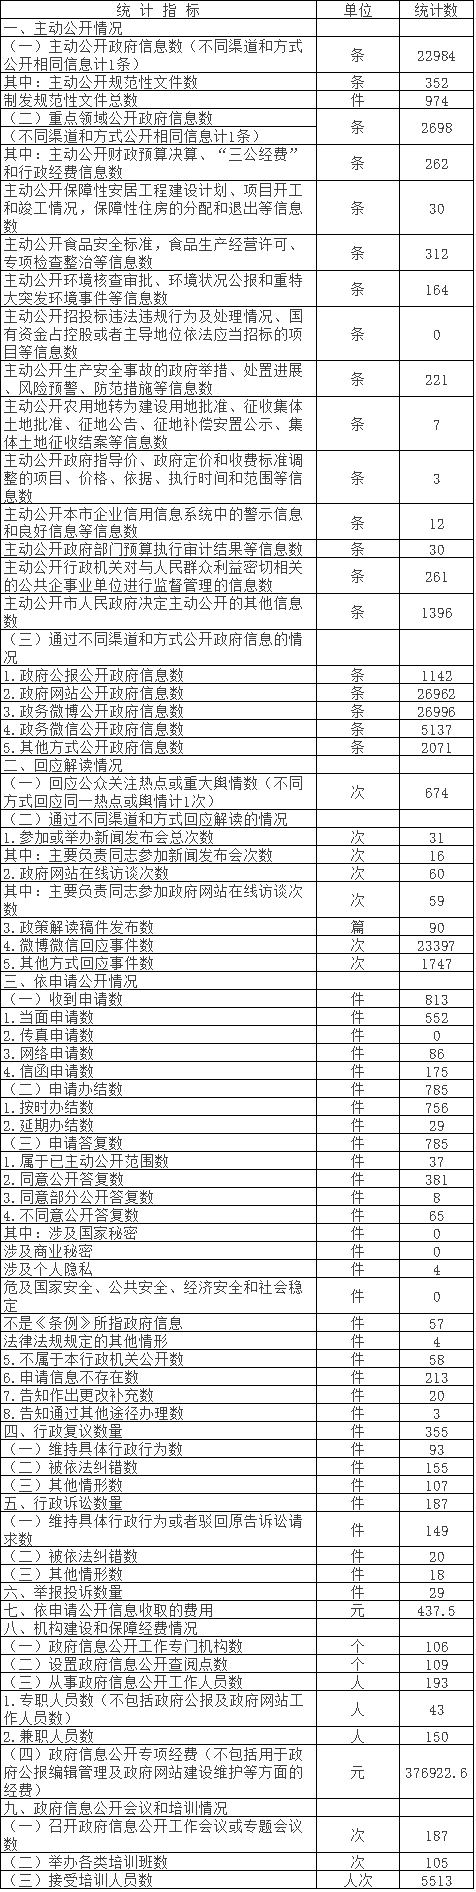 北京市朝陽區人民政府信息公開情況統計表(2016年度)